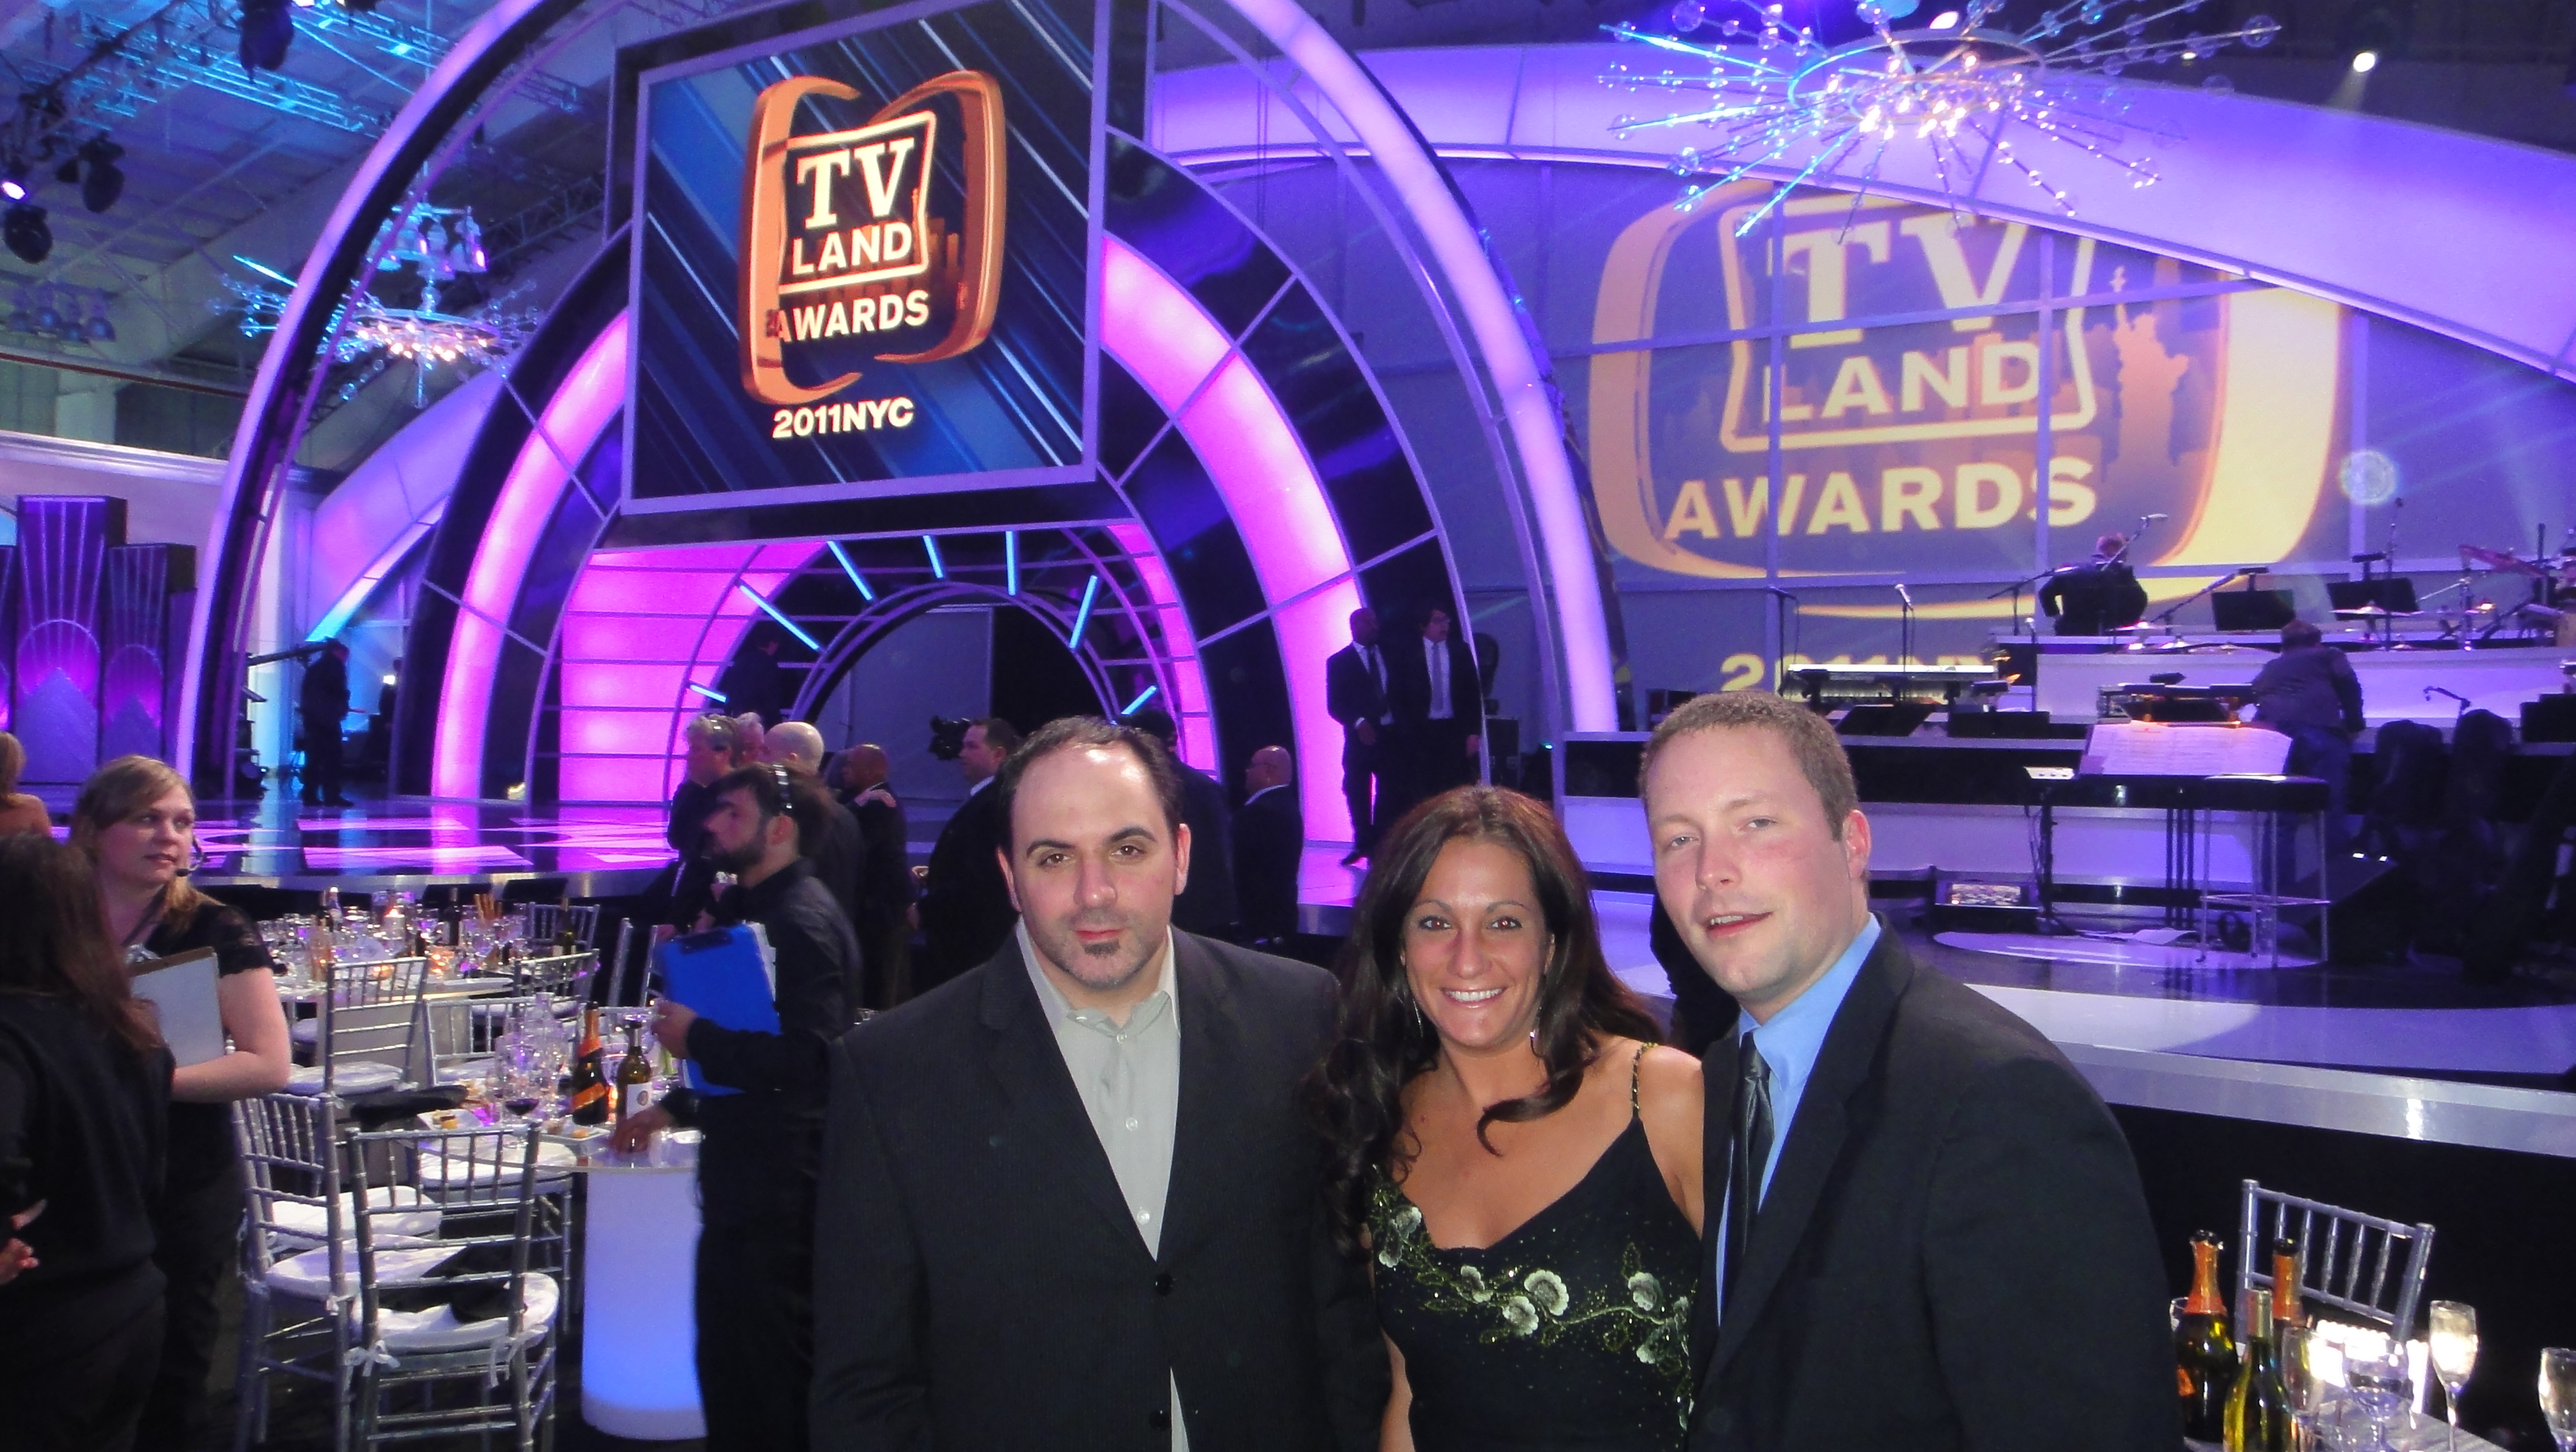 Tv Land awards NYC 2011 - Red Carpet